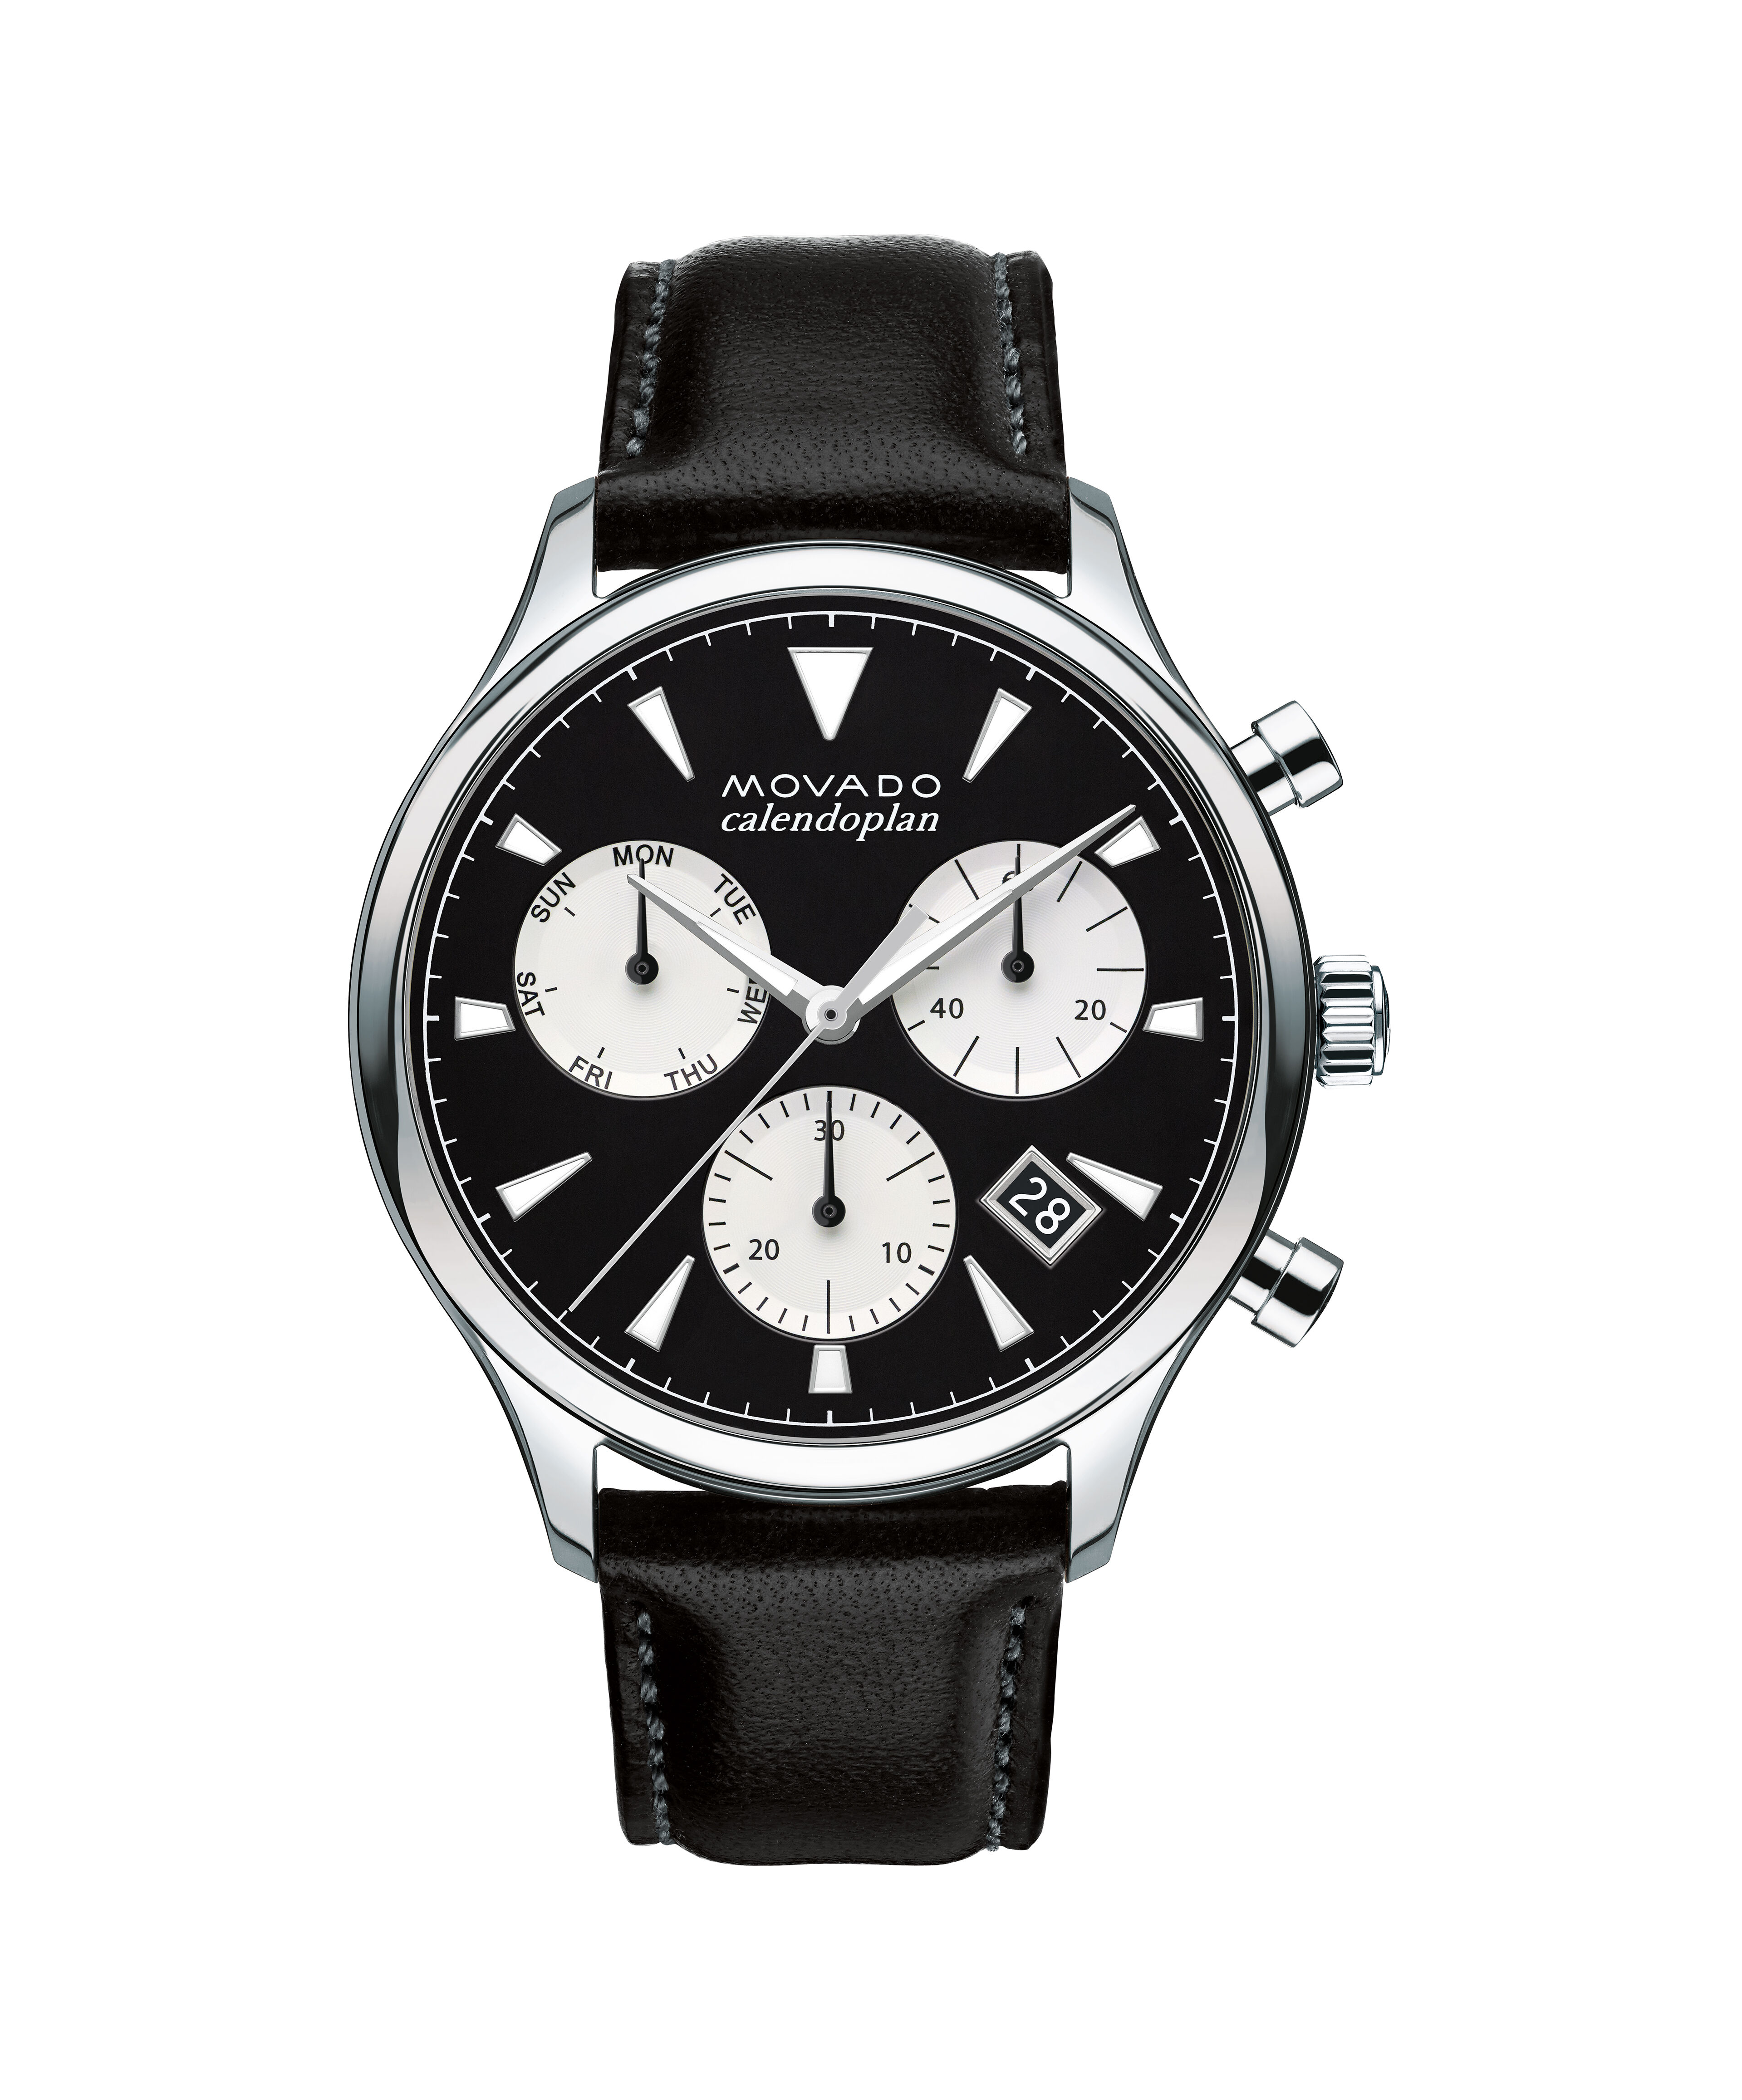 Girard Perregaux Casquette Led Watch Copy